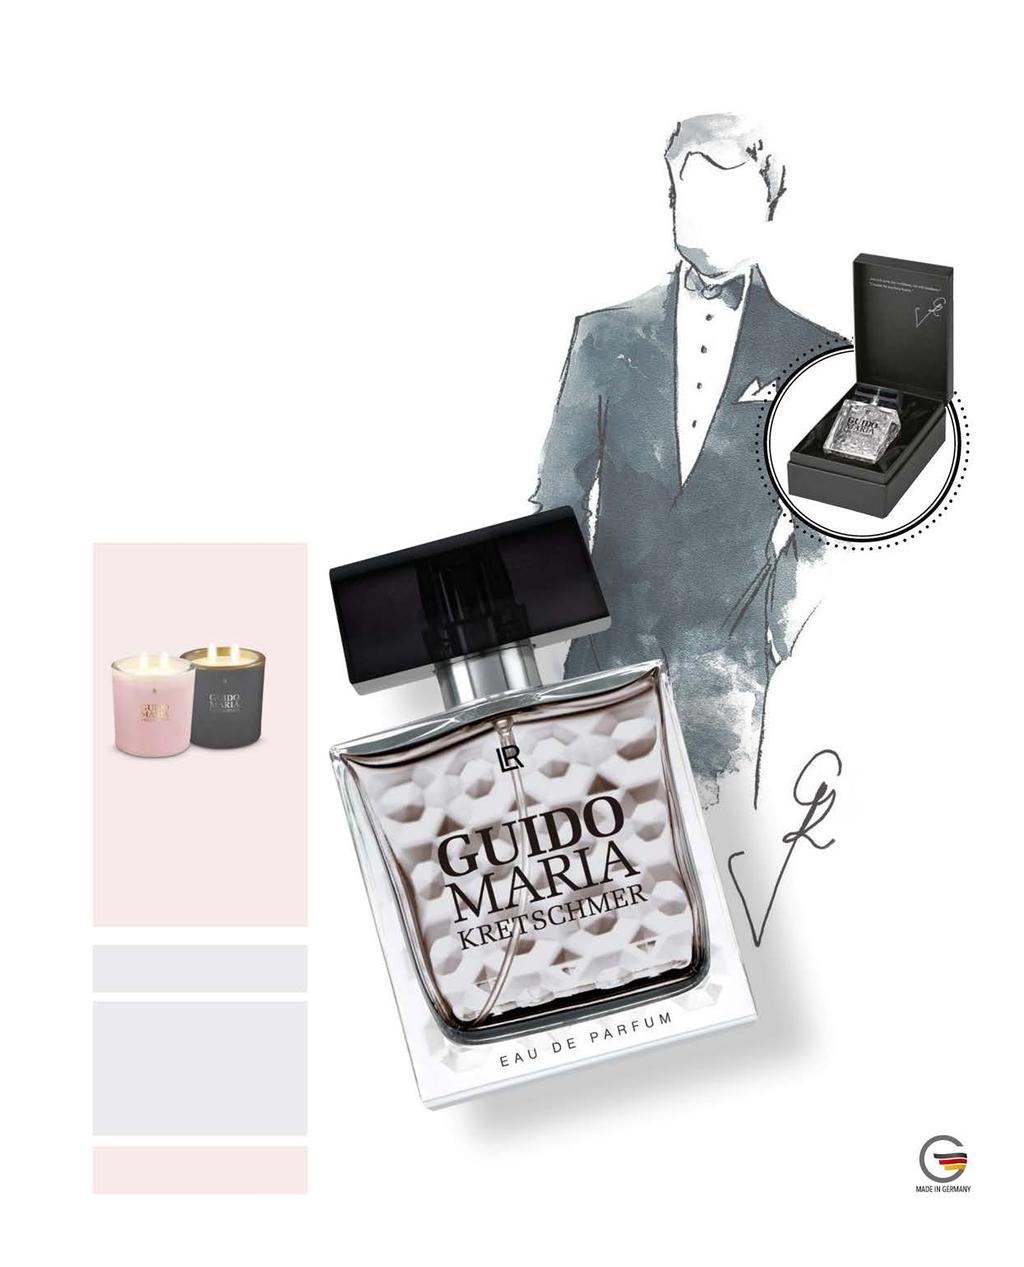 Haute parfum for Men by Guido Maria Kretschmer Net zoals het parfum voor vrouwen, draagt ook het parfum voor mannen het handschrift van de designer: elegant, hoogwaardig, tijdloos en authentiek.